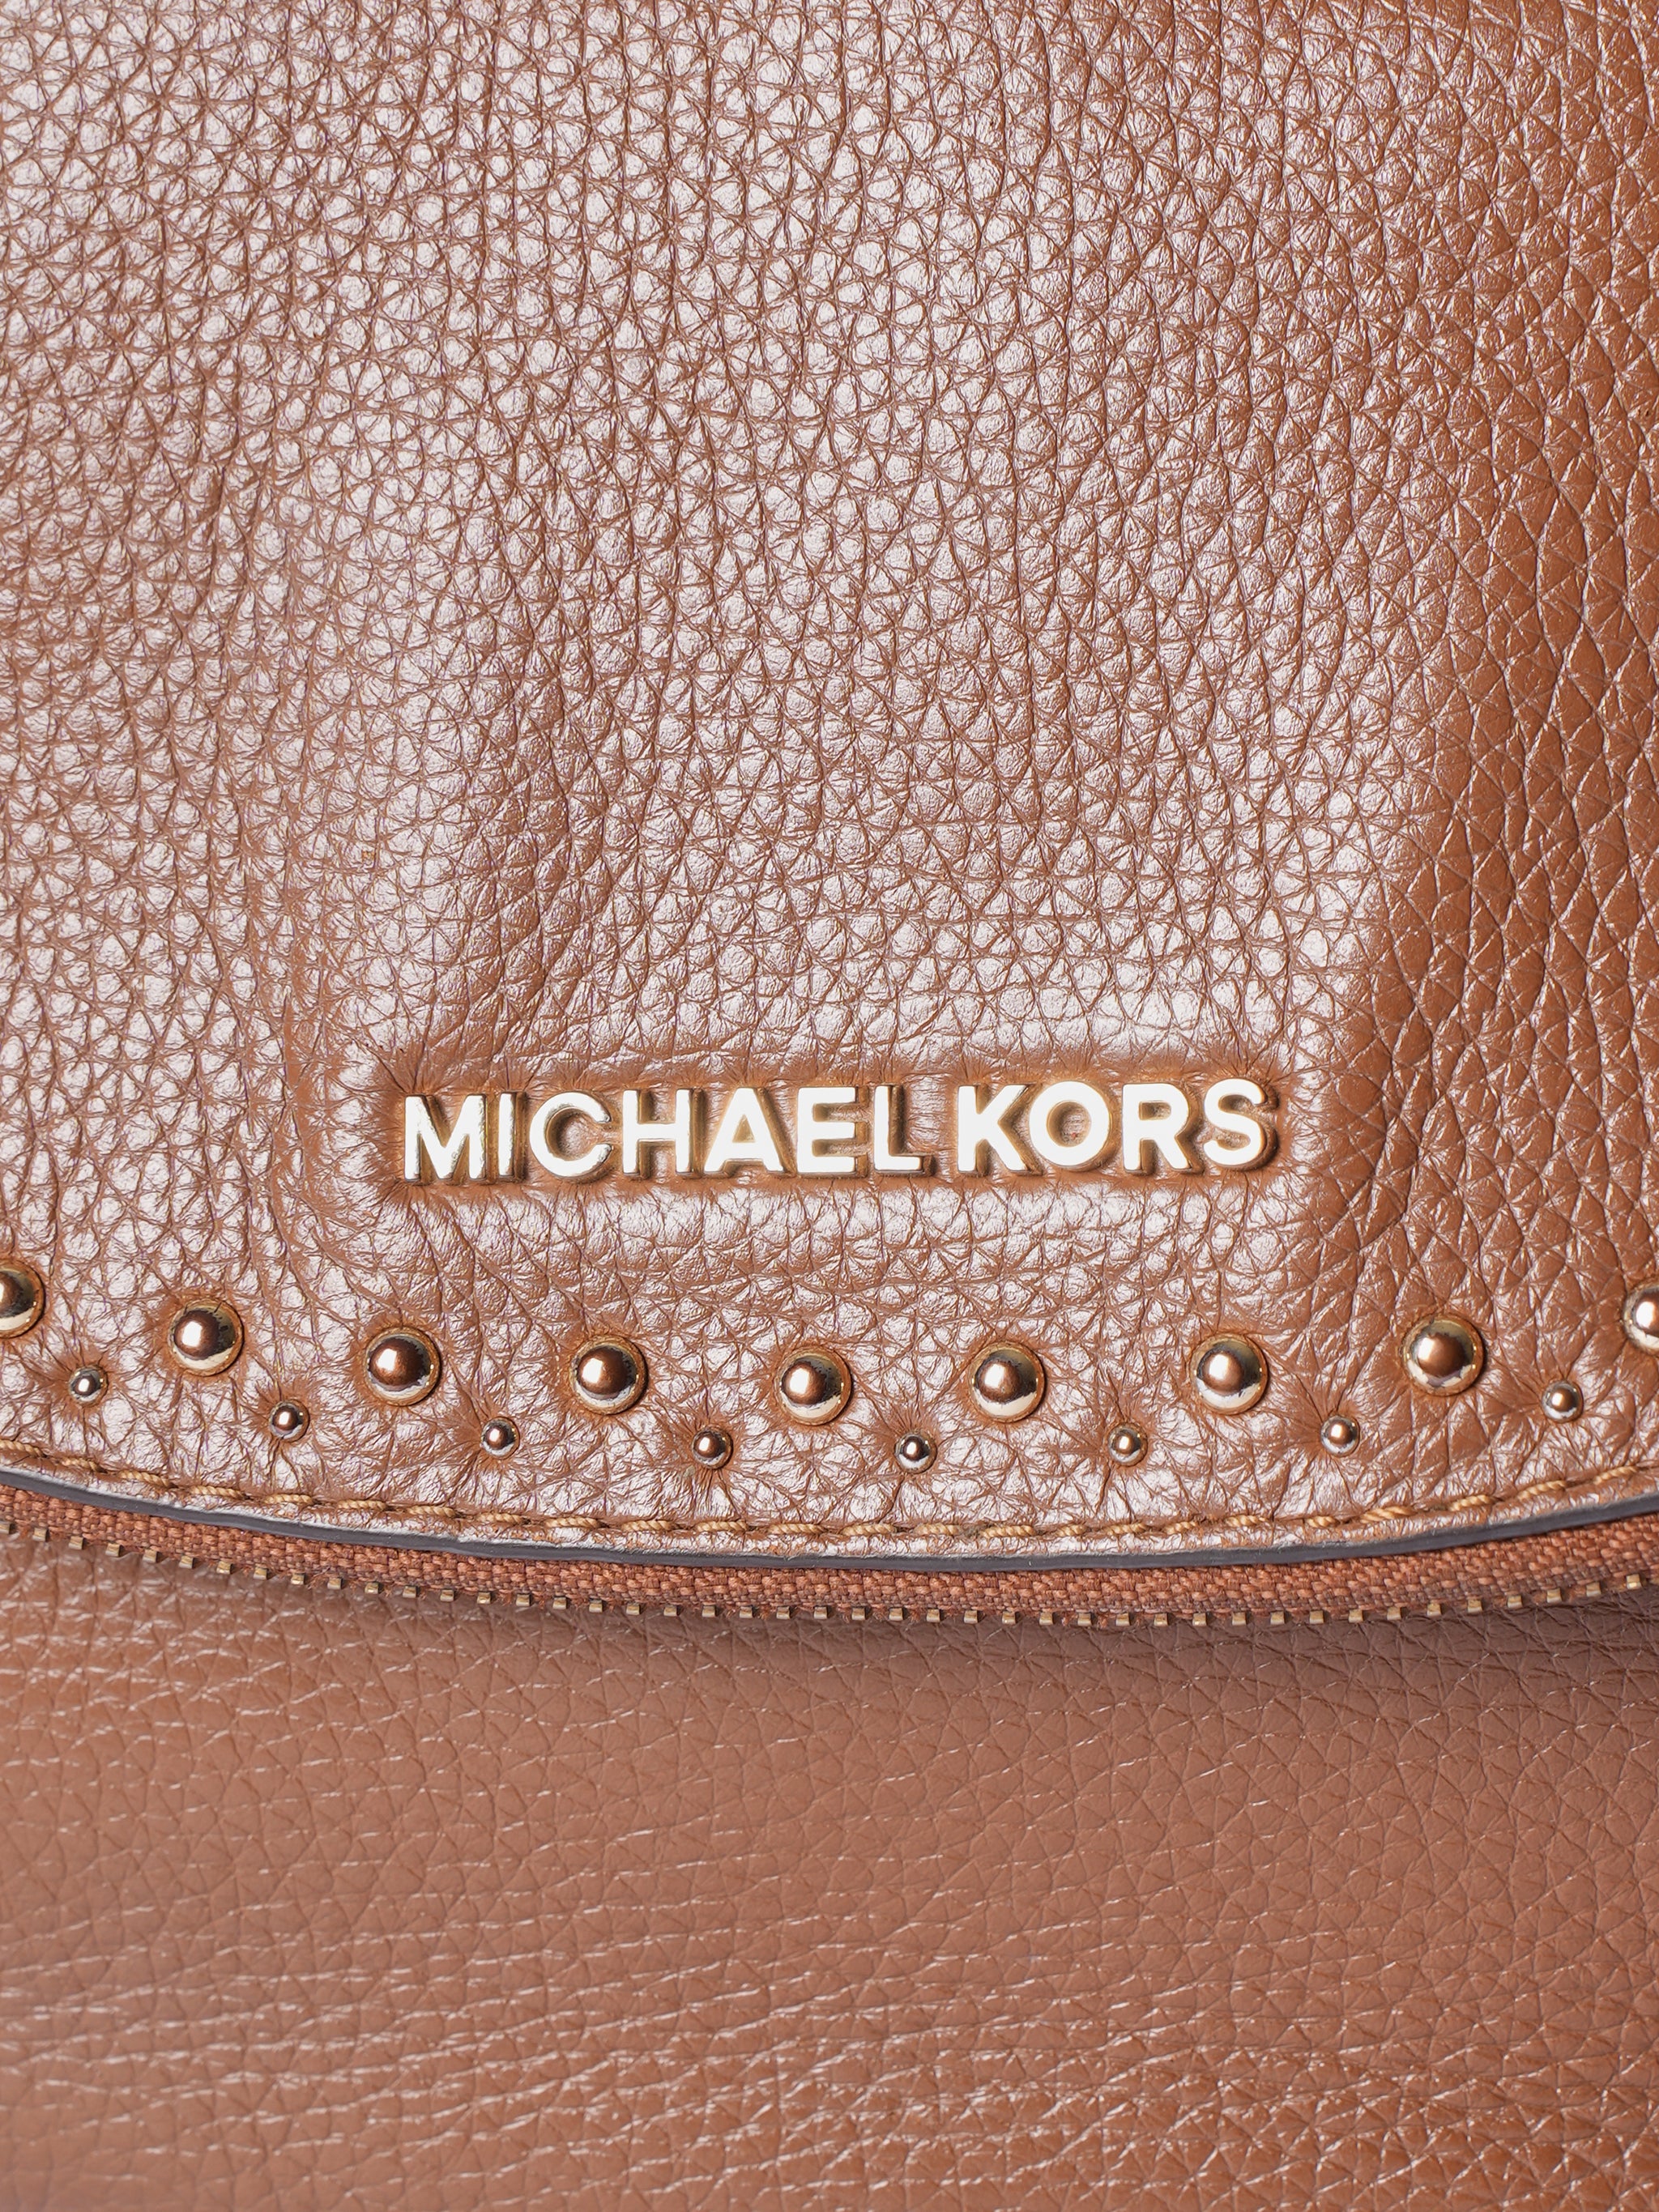 Michael Kors Studded Brown Shoulder Bag